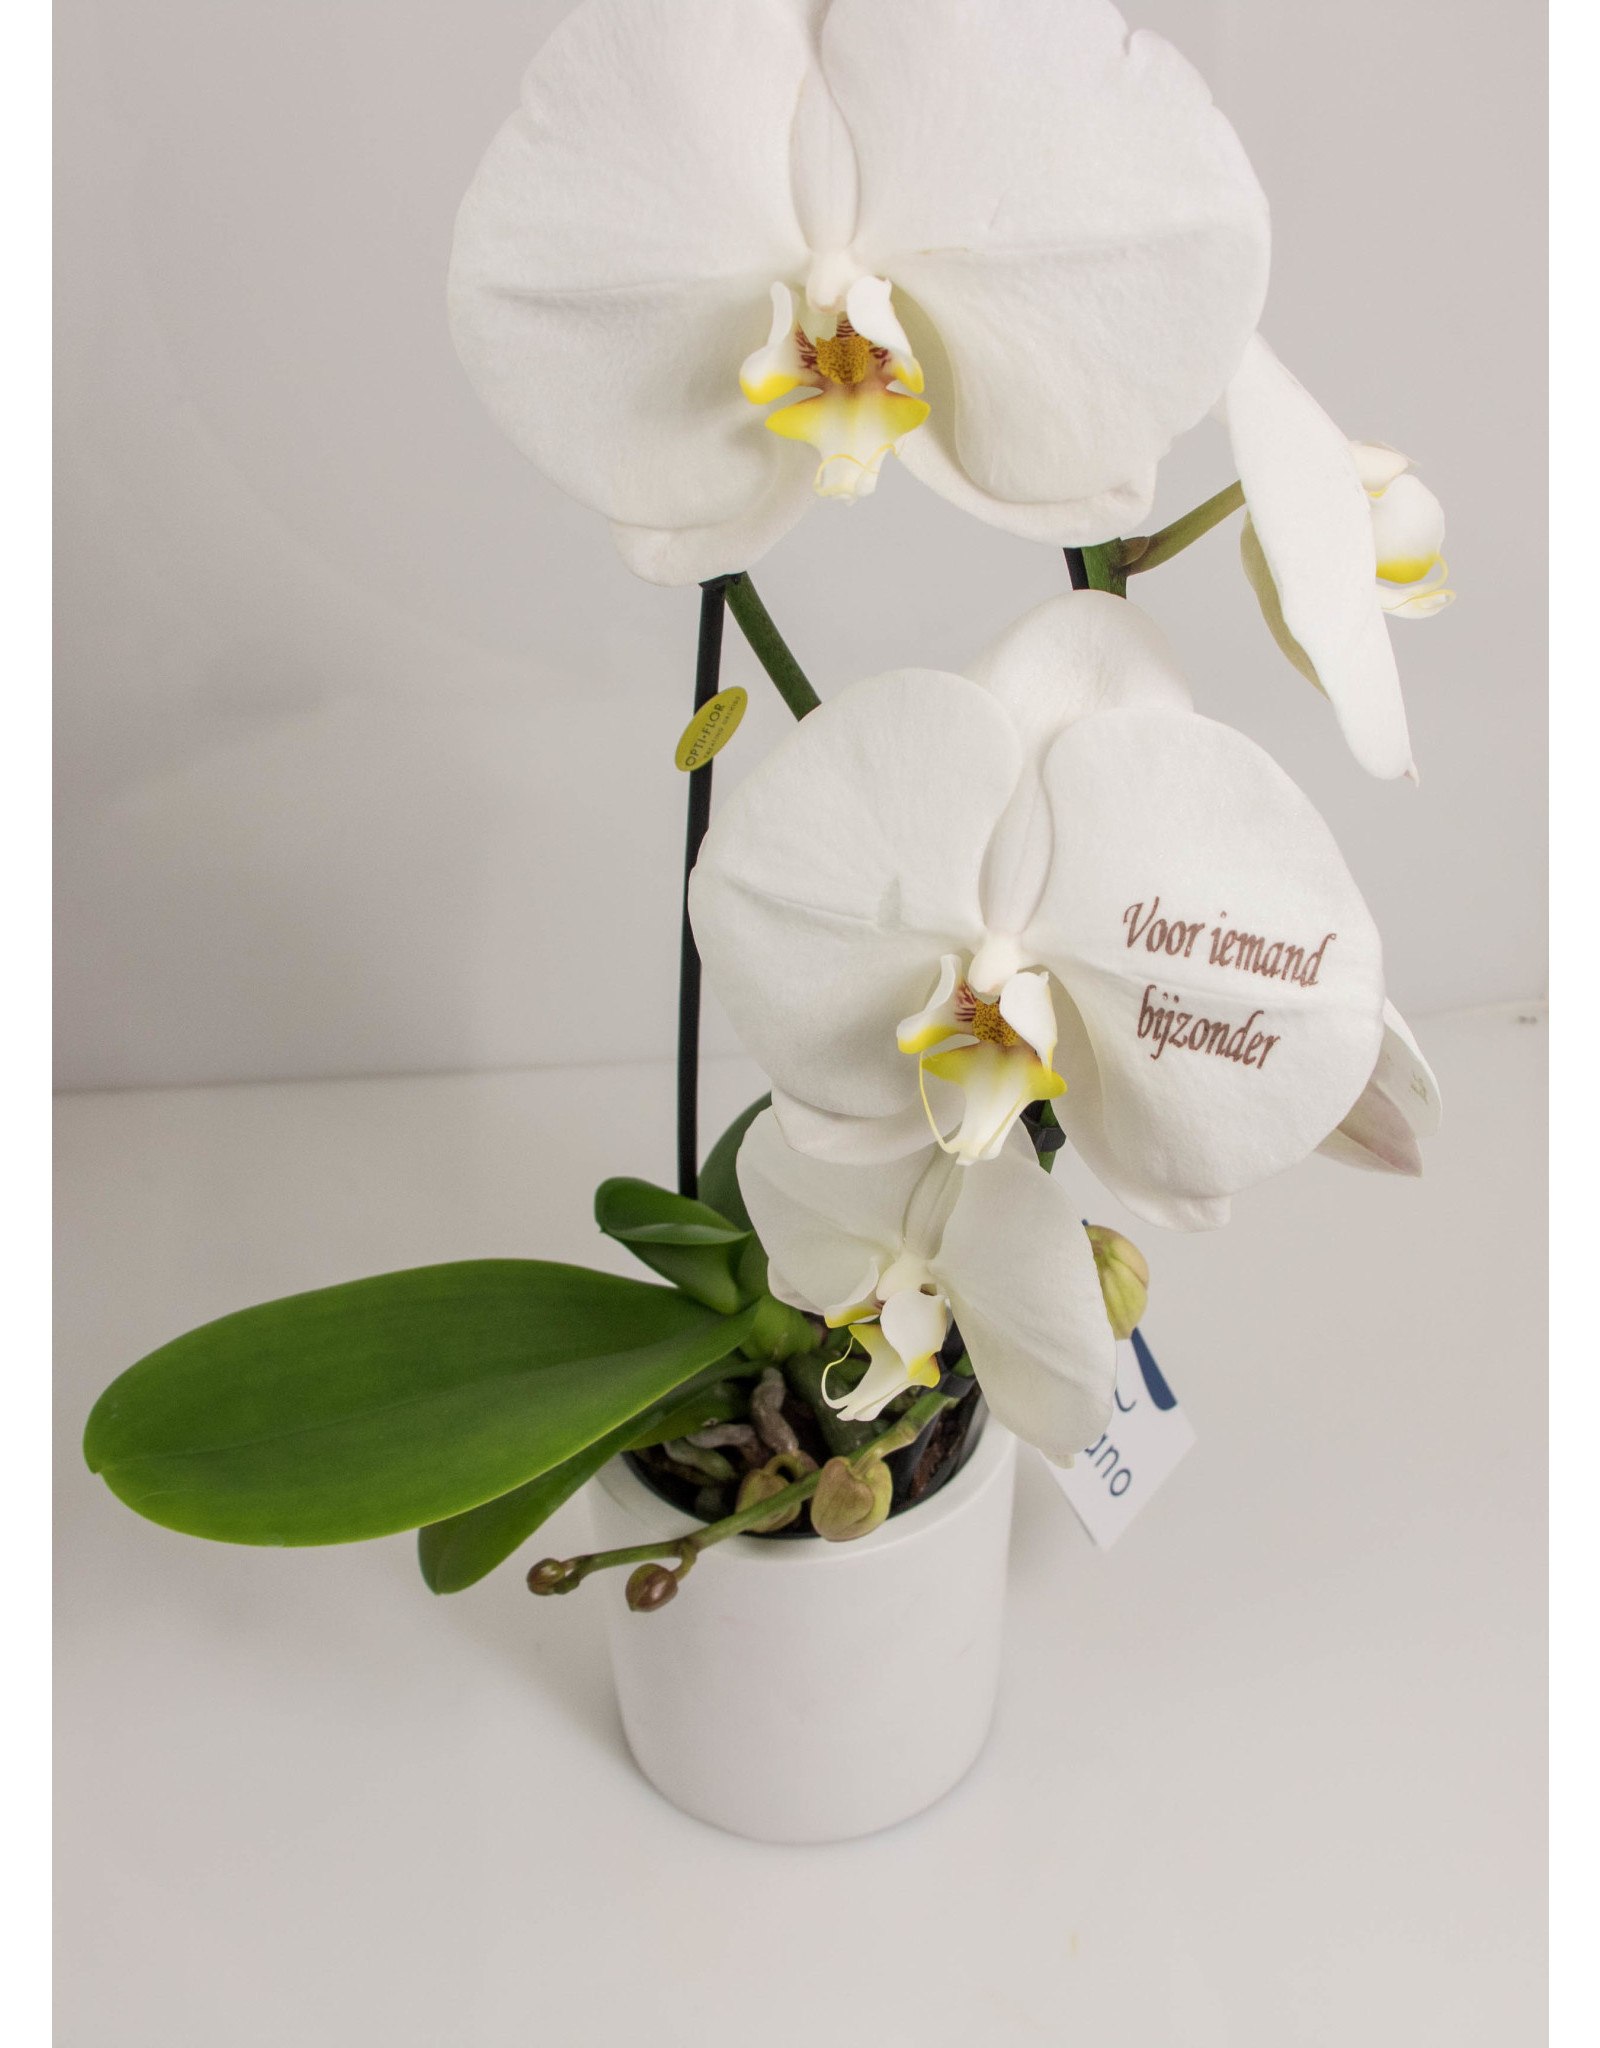 Orchidee - Voor iemand bijzonder